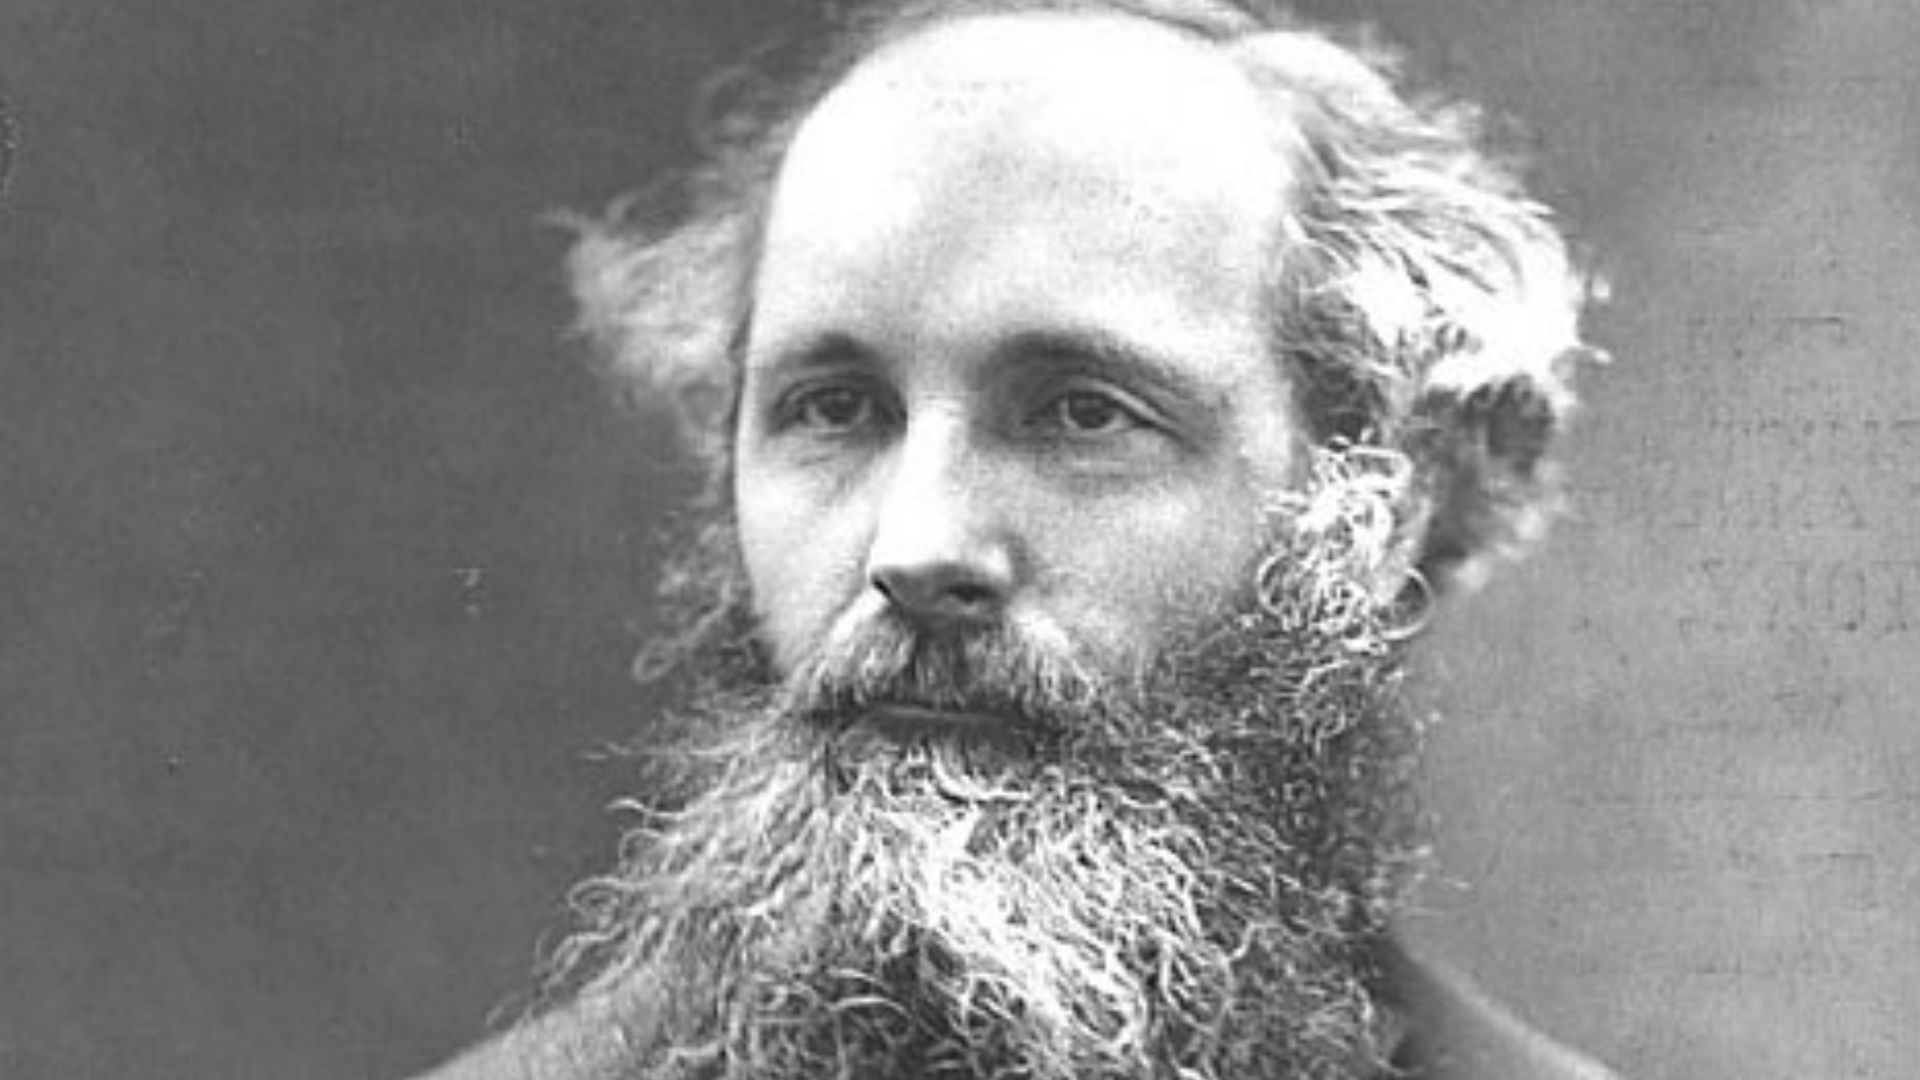 Дж математик. Максвелл физик. Джемс Клерк Максвелл (1831 - 1879).